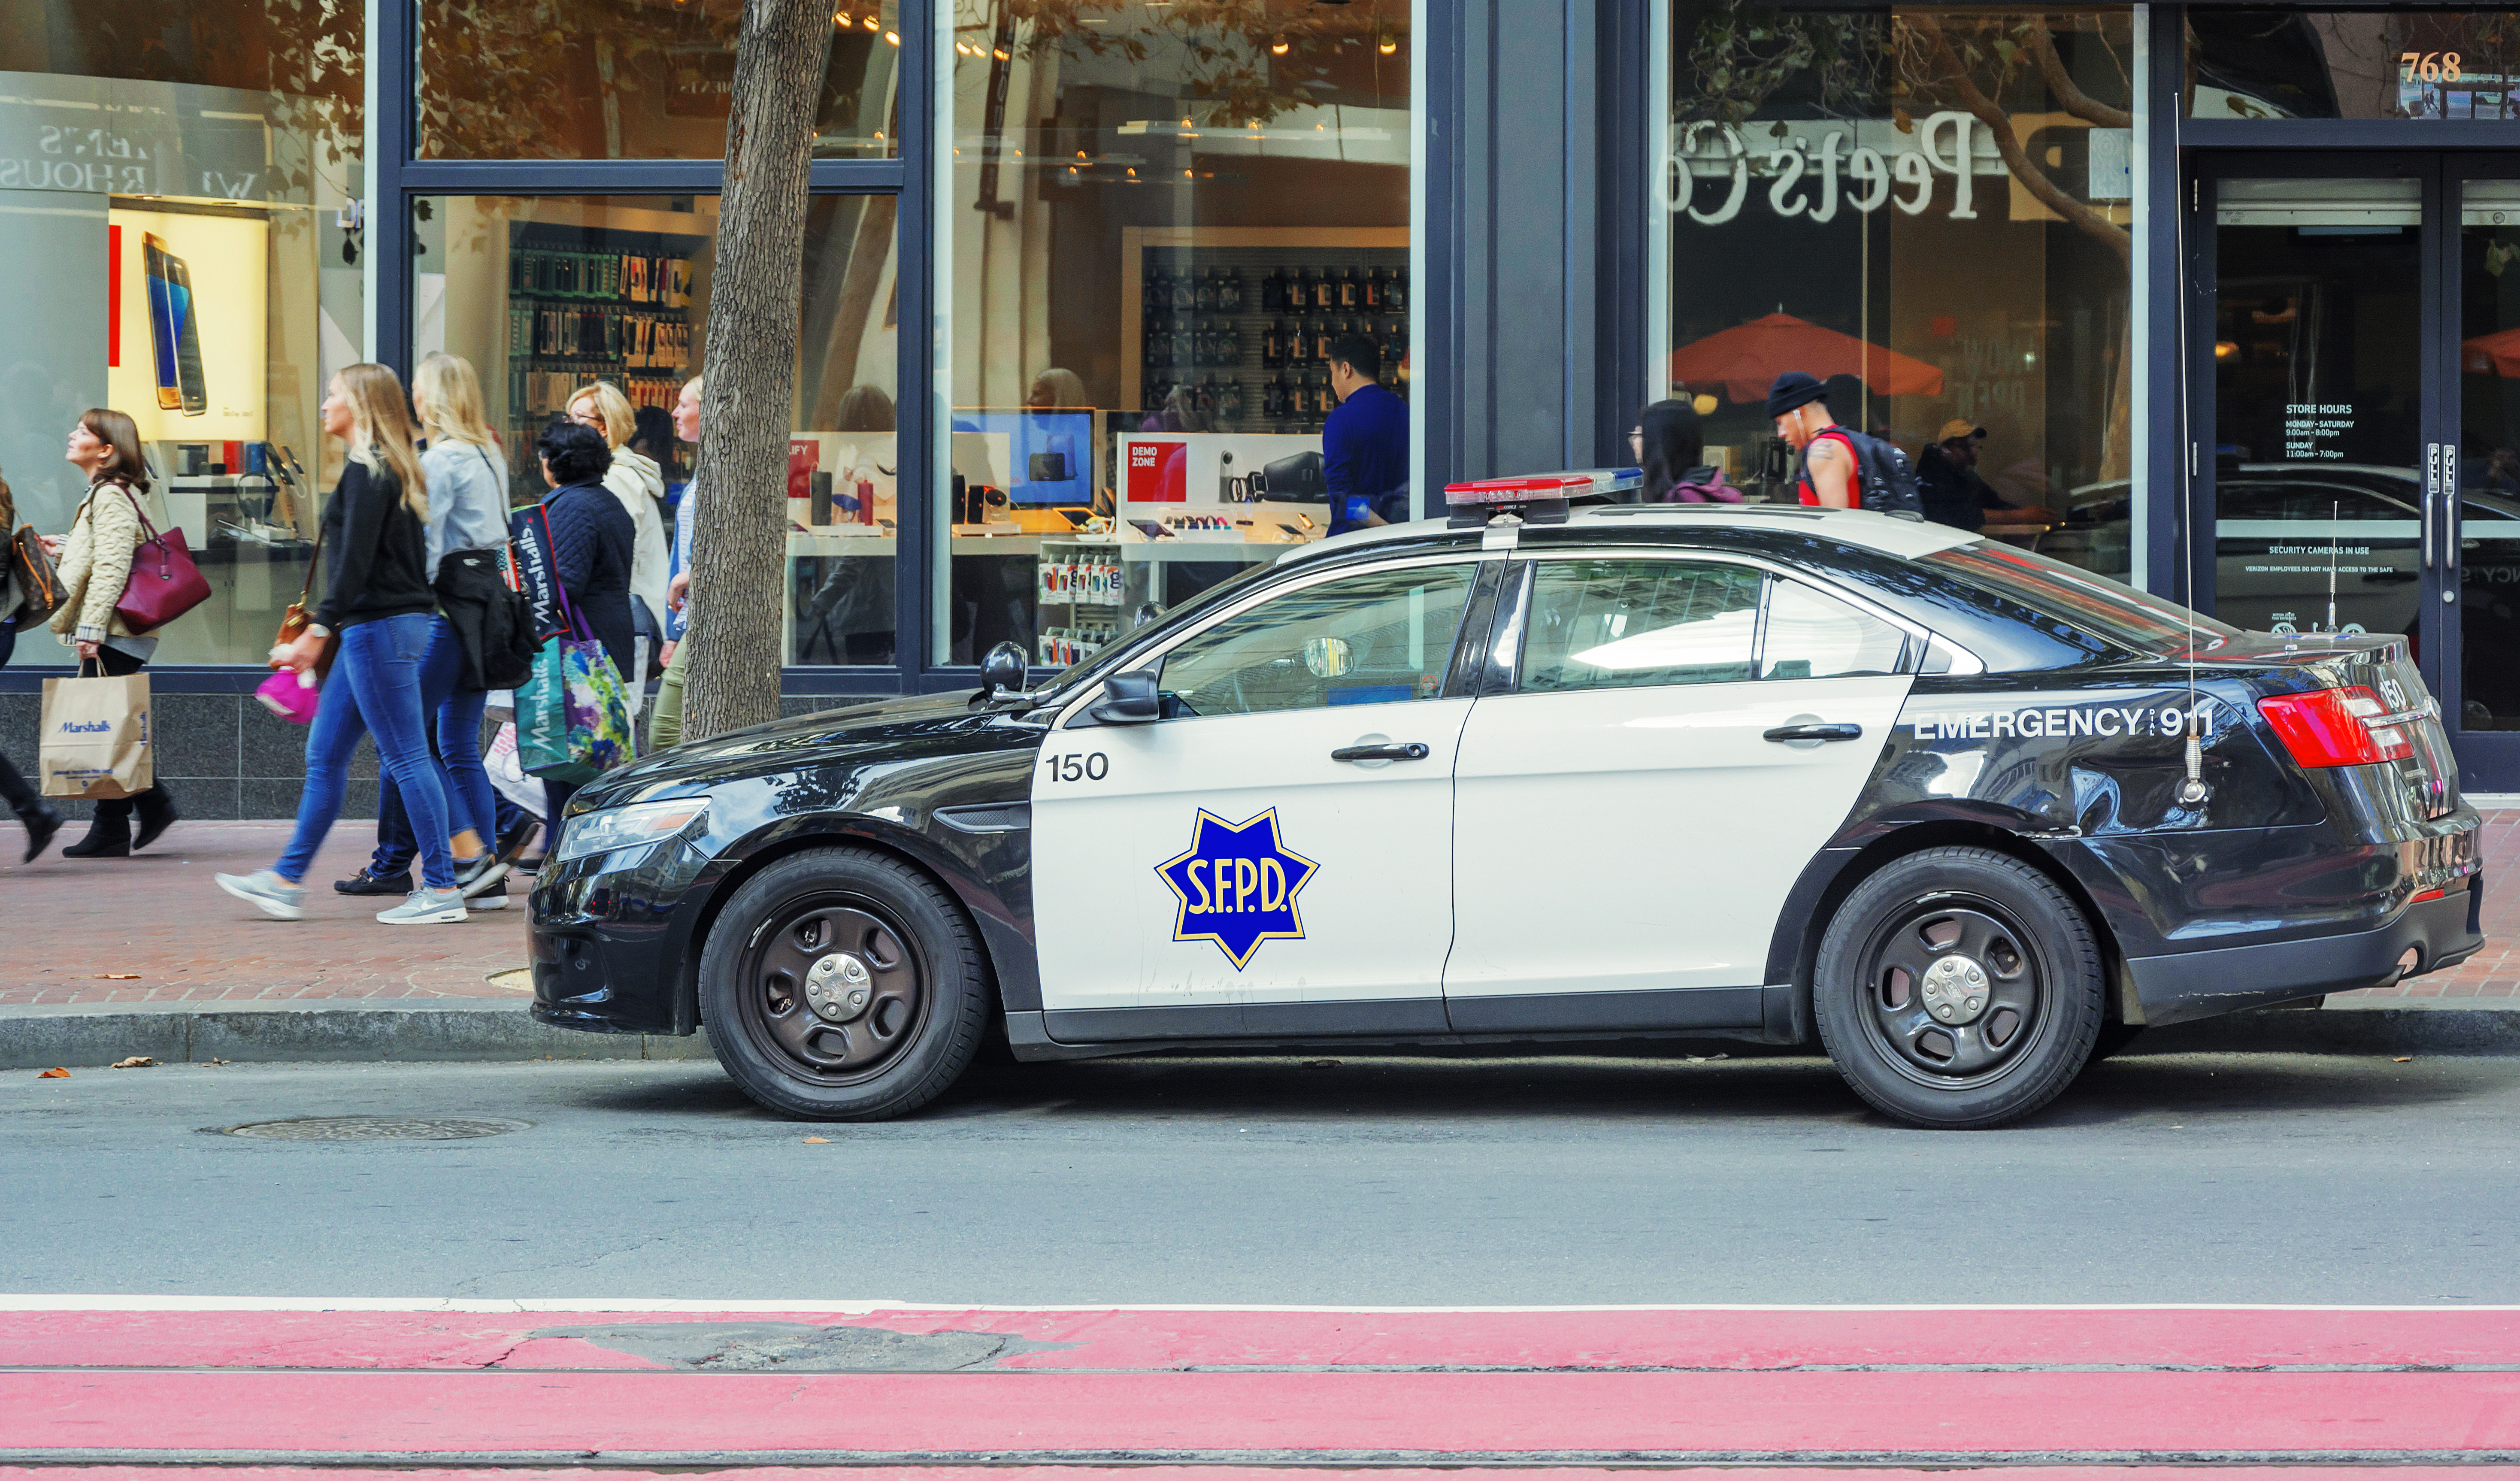 Сан-Франциско одобрил петицию полиции об использовании роботов в качестве «варианта смертоносной силы»